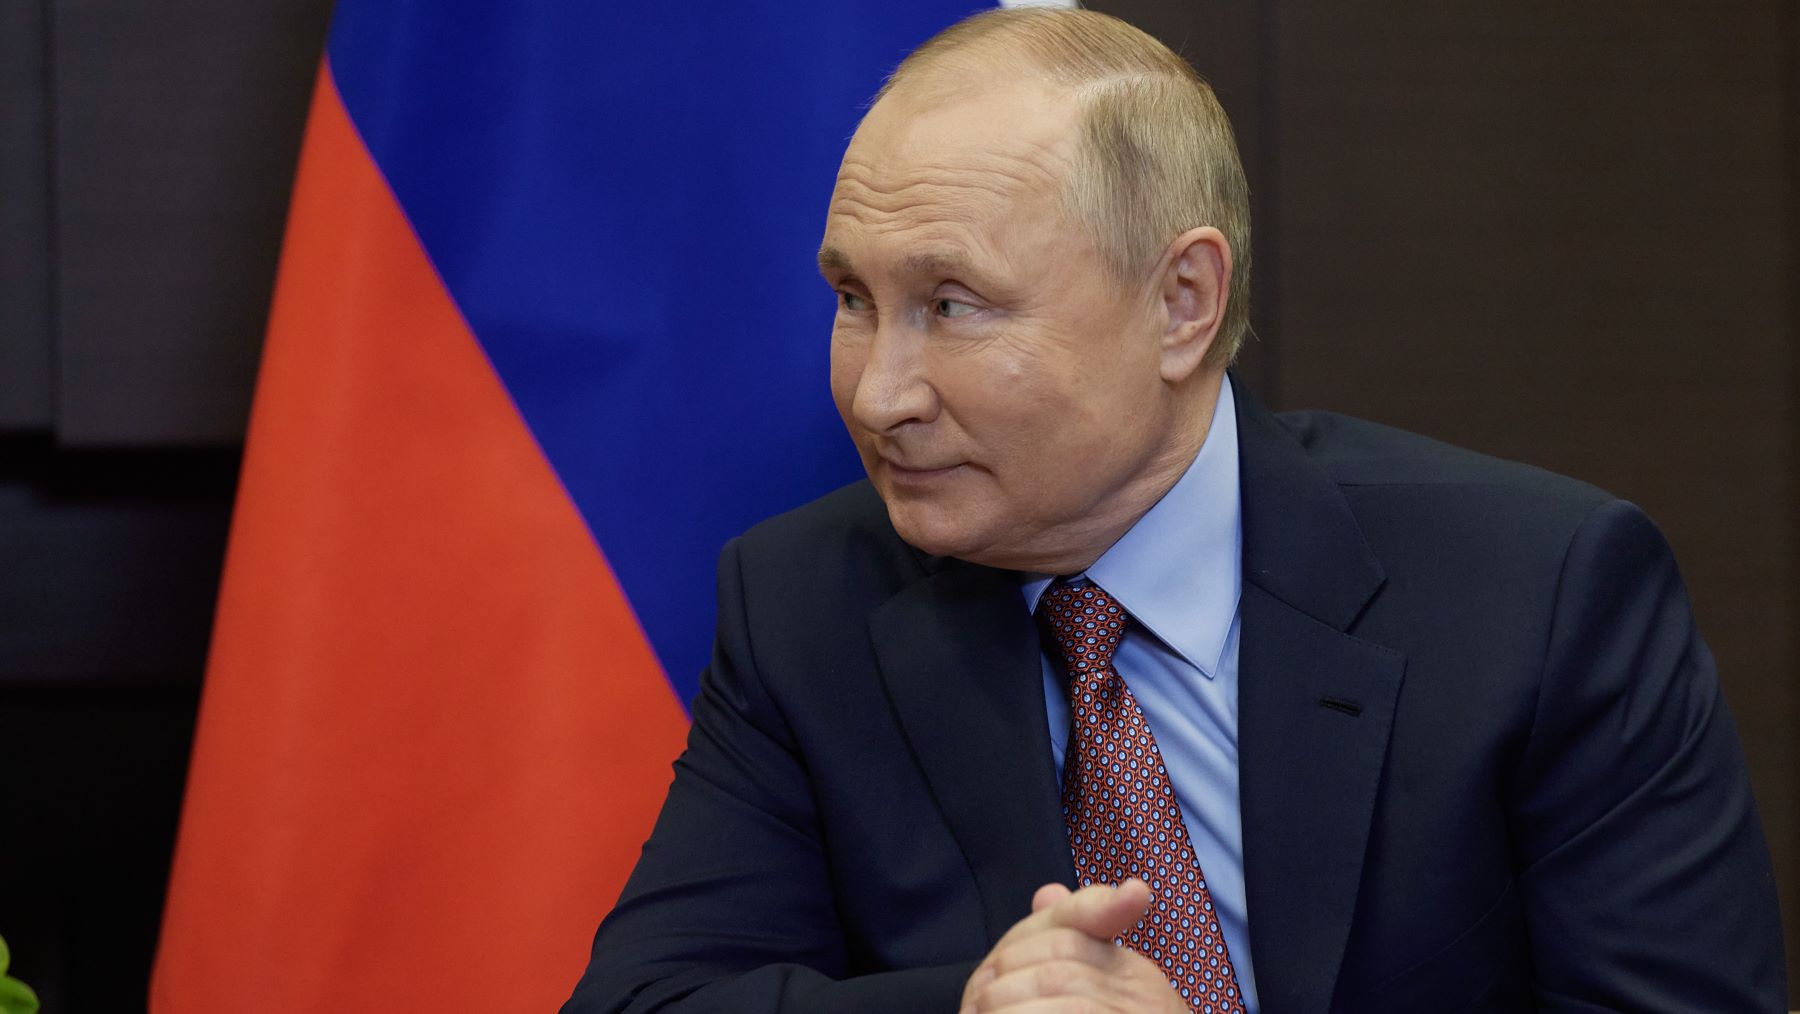 Πούτιν – Ουκρανία: Κατάπαυση πυρός επιθυμεί ο Πρόεδρος, σύμφωνα με το Reuters